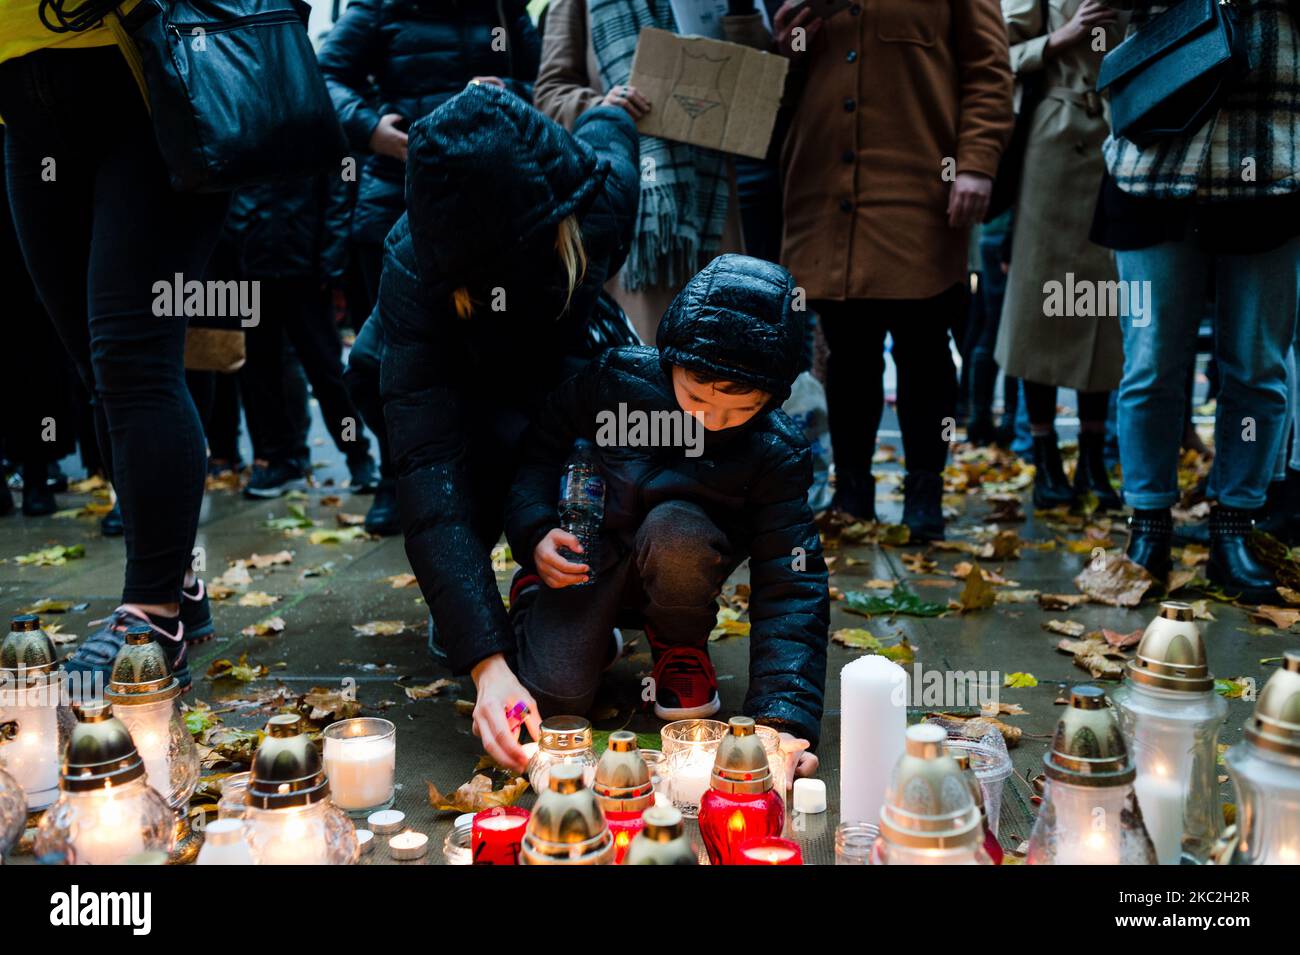 Una donna e un ragazzo accendono una candela mentre i dimostranti si riuniscono fuori dall'ambasciata polacca a Londra, in Gran Bretagna, il 24 ottobre 2020. La Corte di giustizia polacca stabilisce che l'aborto dovuto a difetti mortali è incostituzionale, il che significa un divieto quasi totale della procedura. (Foto di Maciek Musialek/NurPhoto) Foto Stock